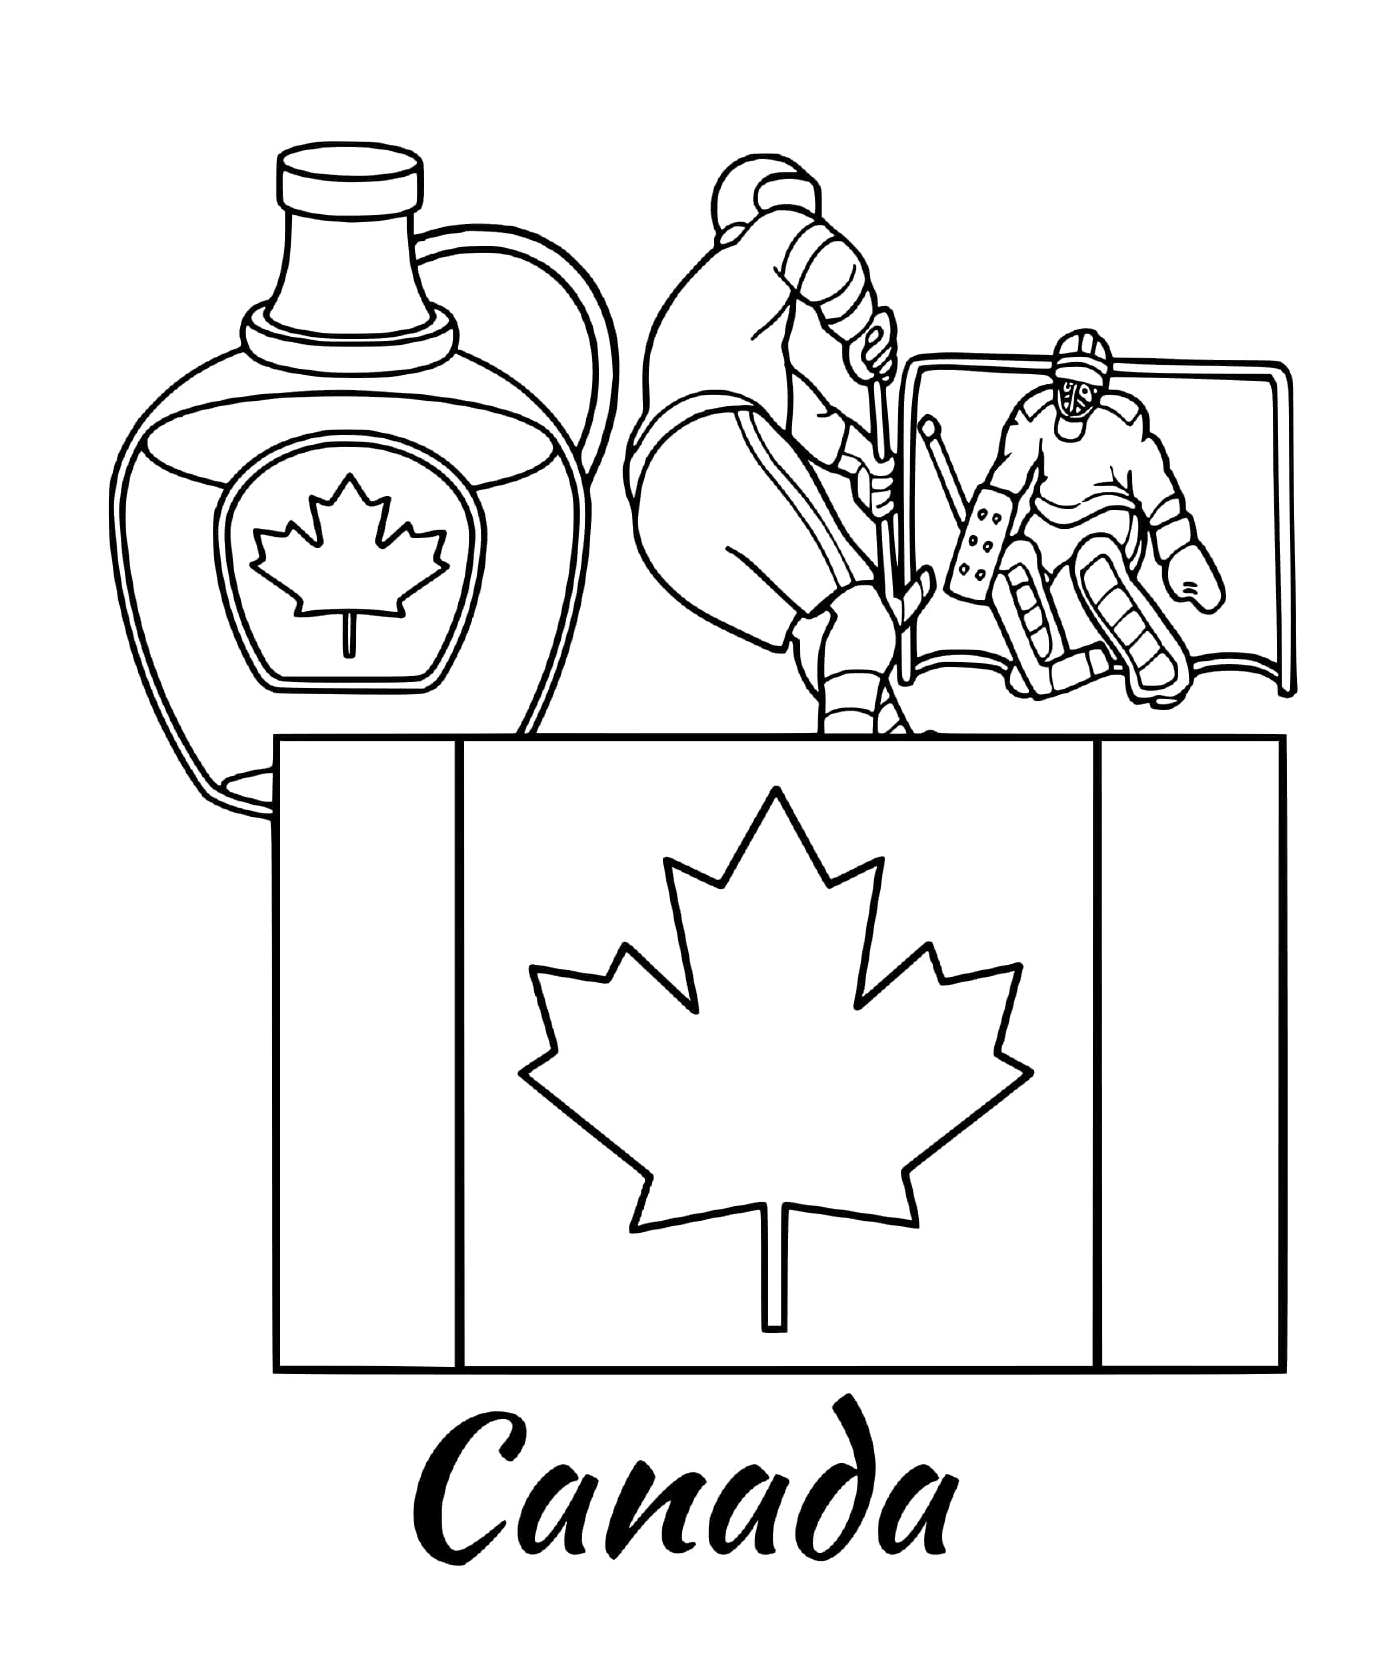  加拿大的标志旗,配有Mamele的加拿大国旗 